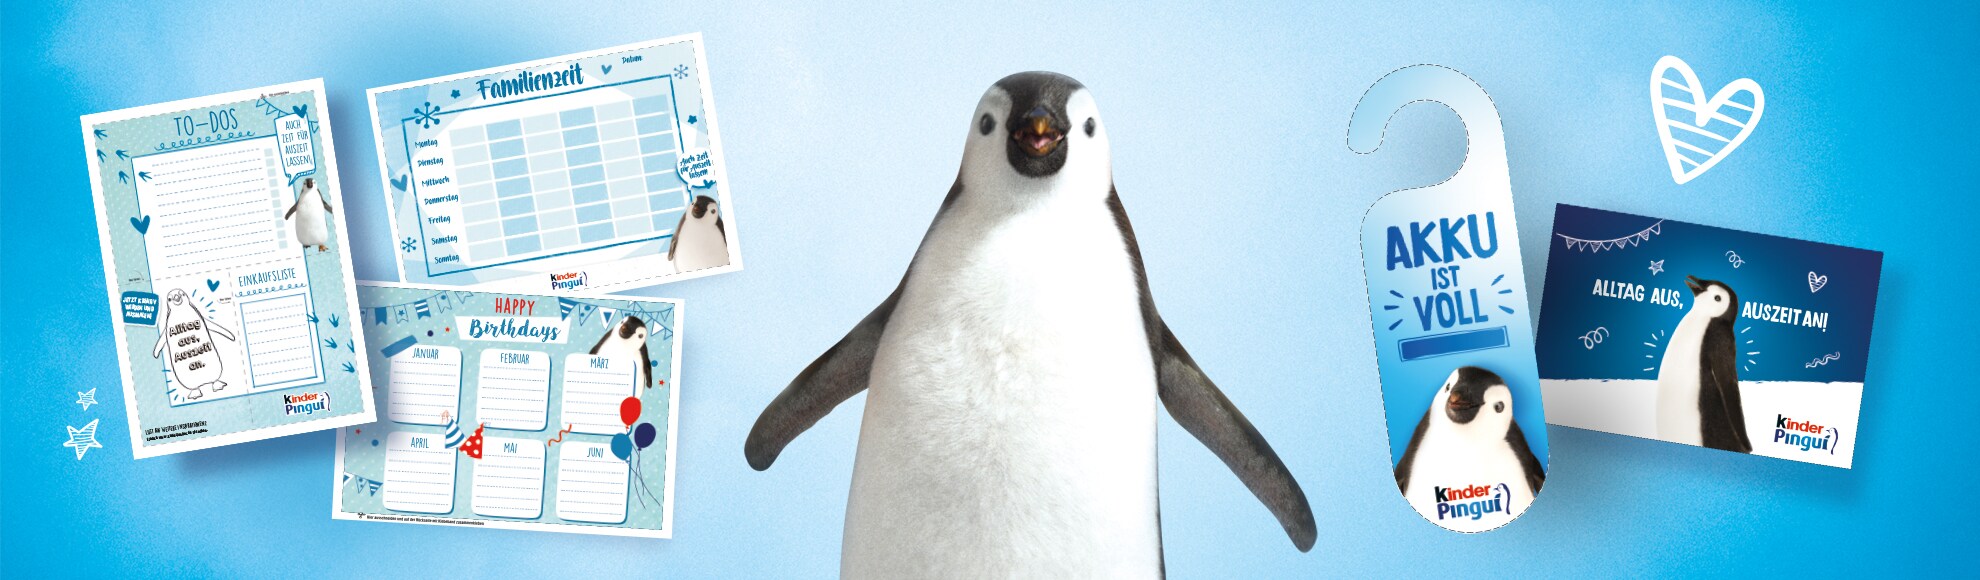 kinder Pingui - Inspirationen von Ole